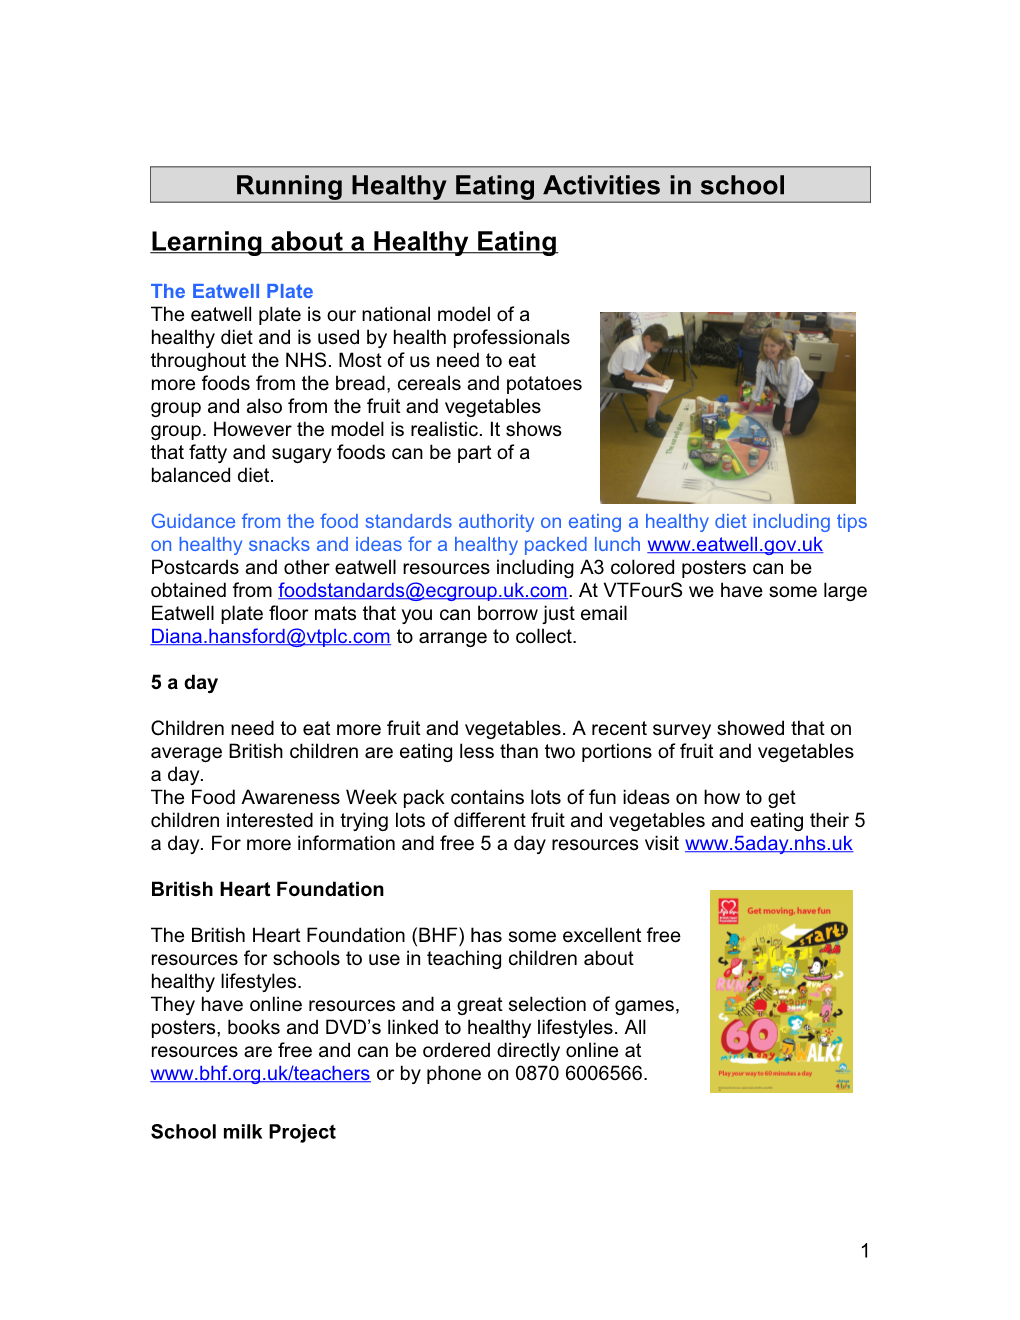 Running Healthy Eating Activities in School